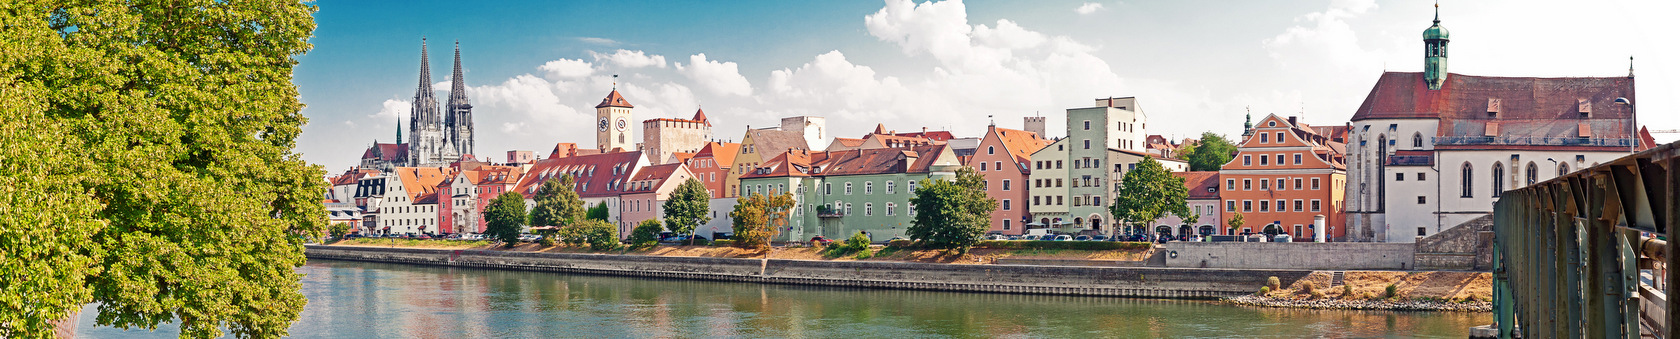 Regensburg - idealne miasto do uczenia się języka niemieckiego